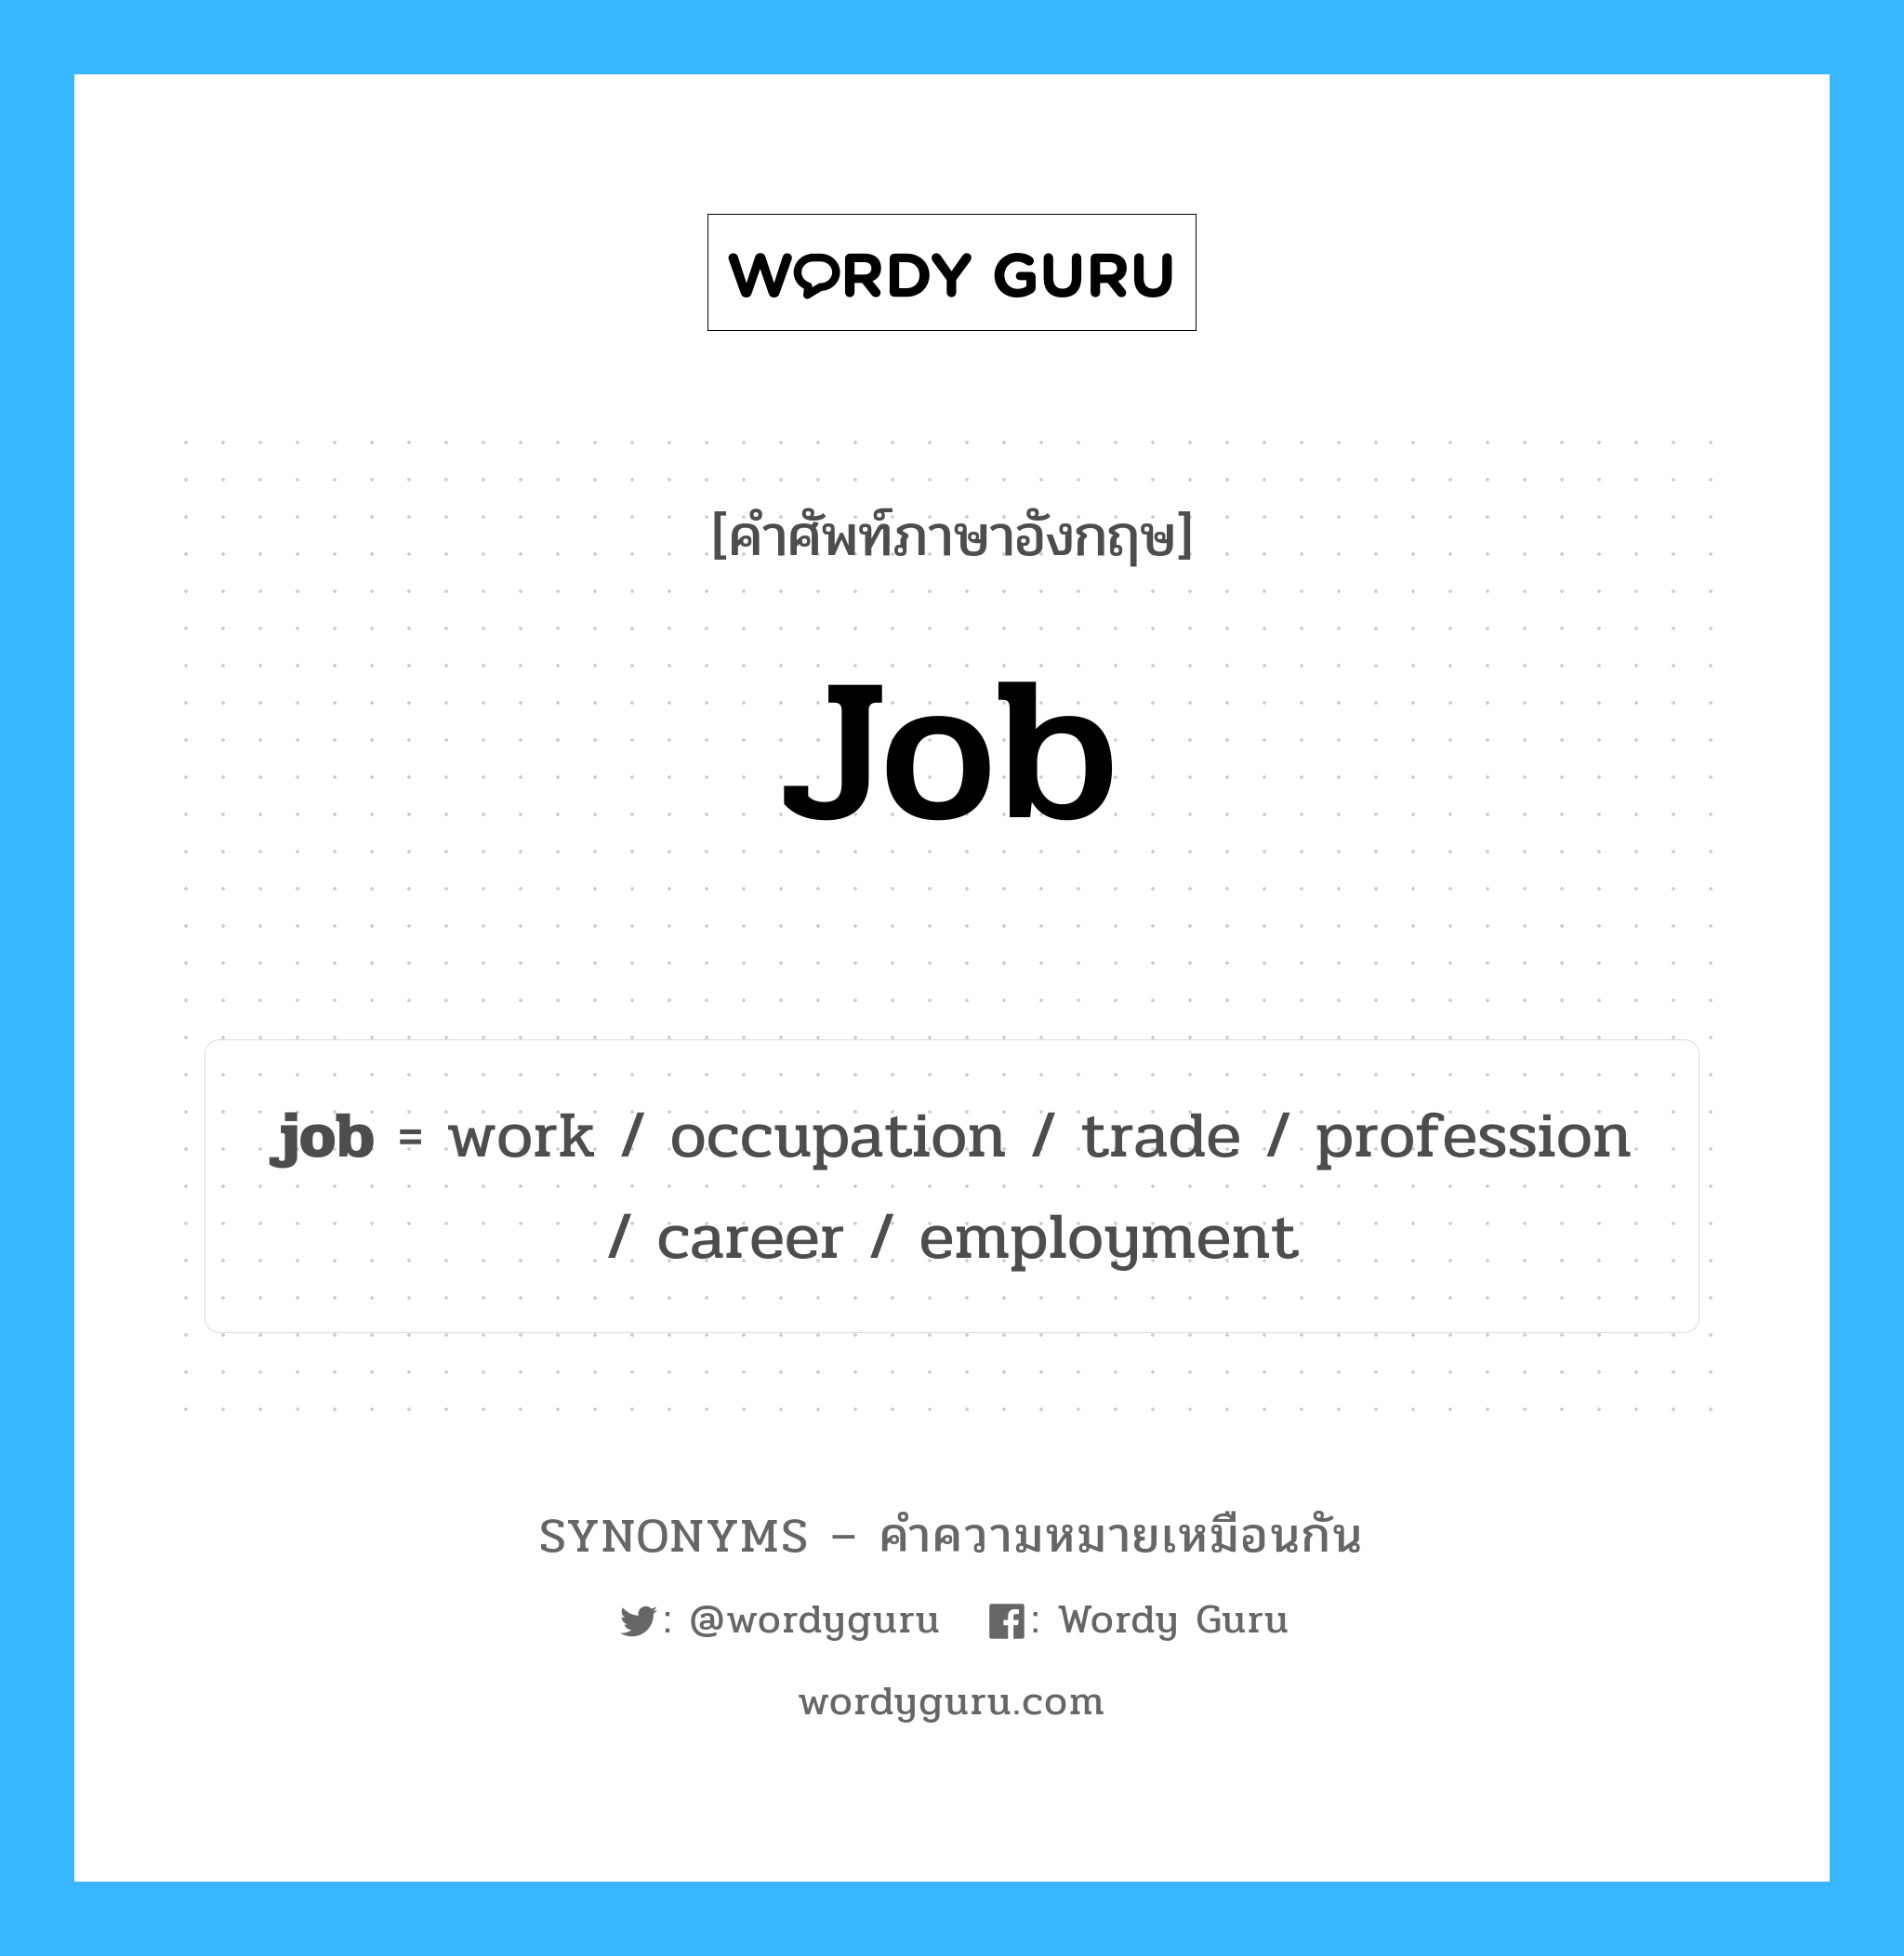 work เป็นหนึ่งใน job และมีคำอื่น ๆ อีกดังนี้, คำศัพท์ภาษาอังกฤษ work ความหมายคล้ายกันกับ job แปลว่า ทำงาน หมวด job